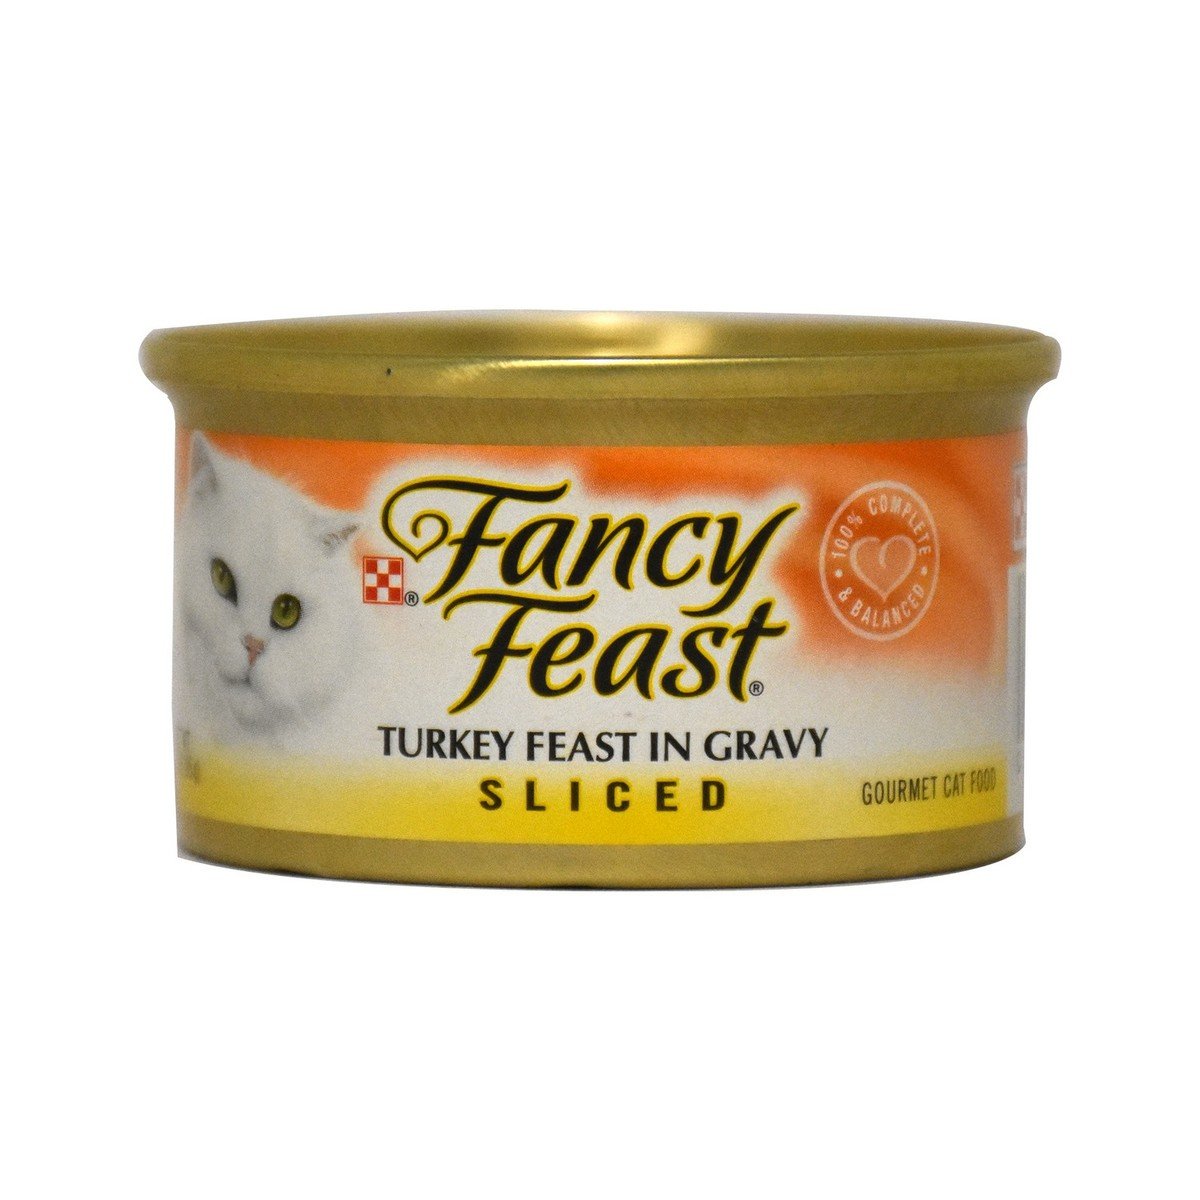 Purina Fancy Feast Turkey Feast in Gravy 3oz